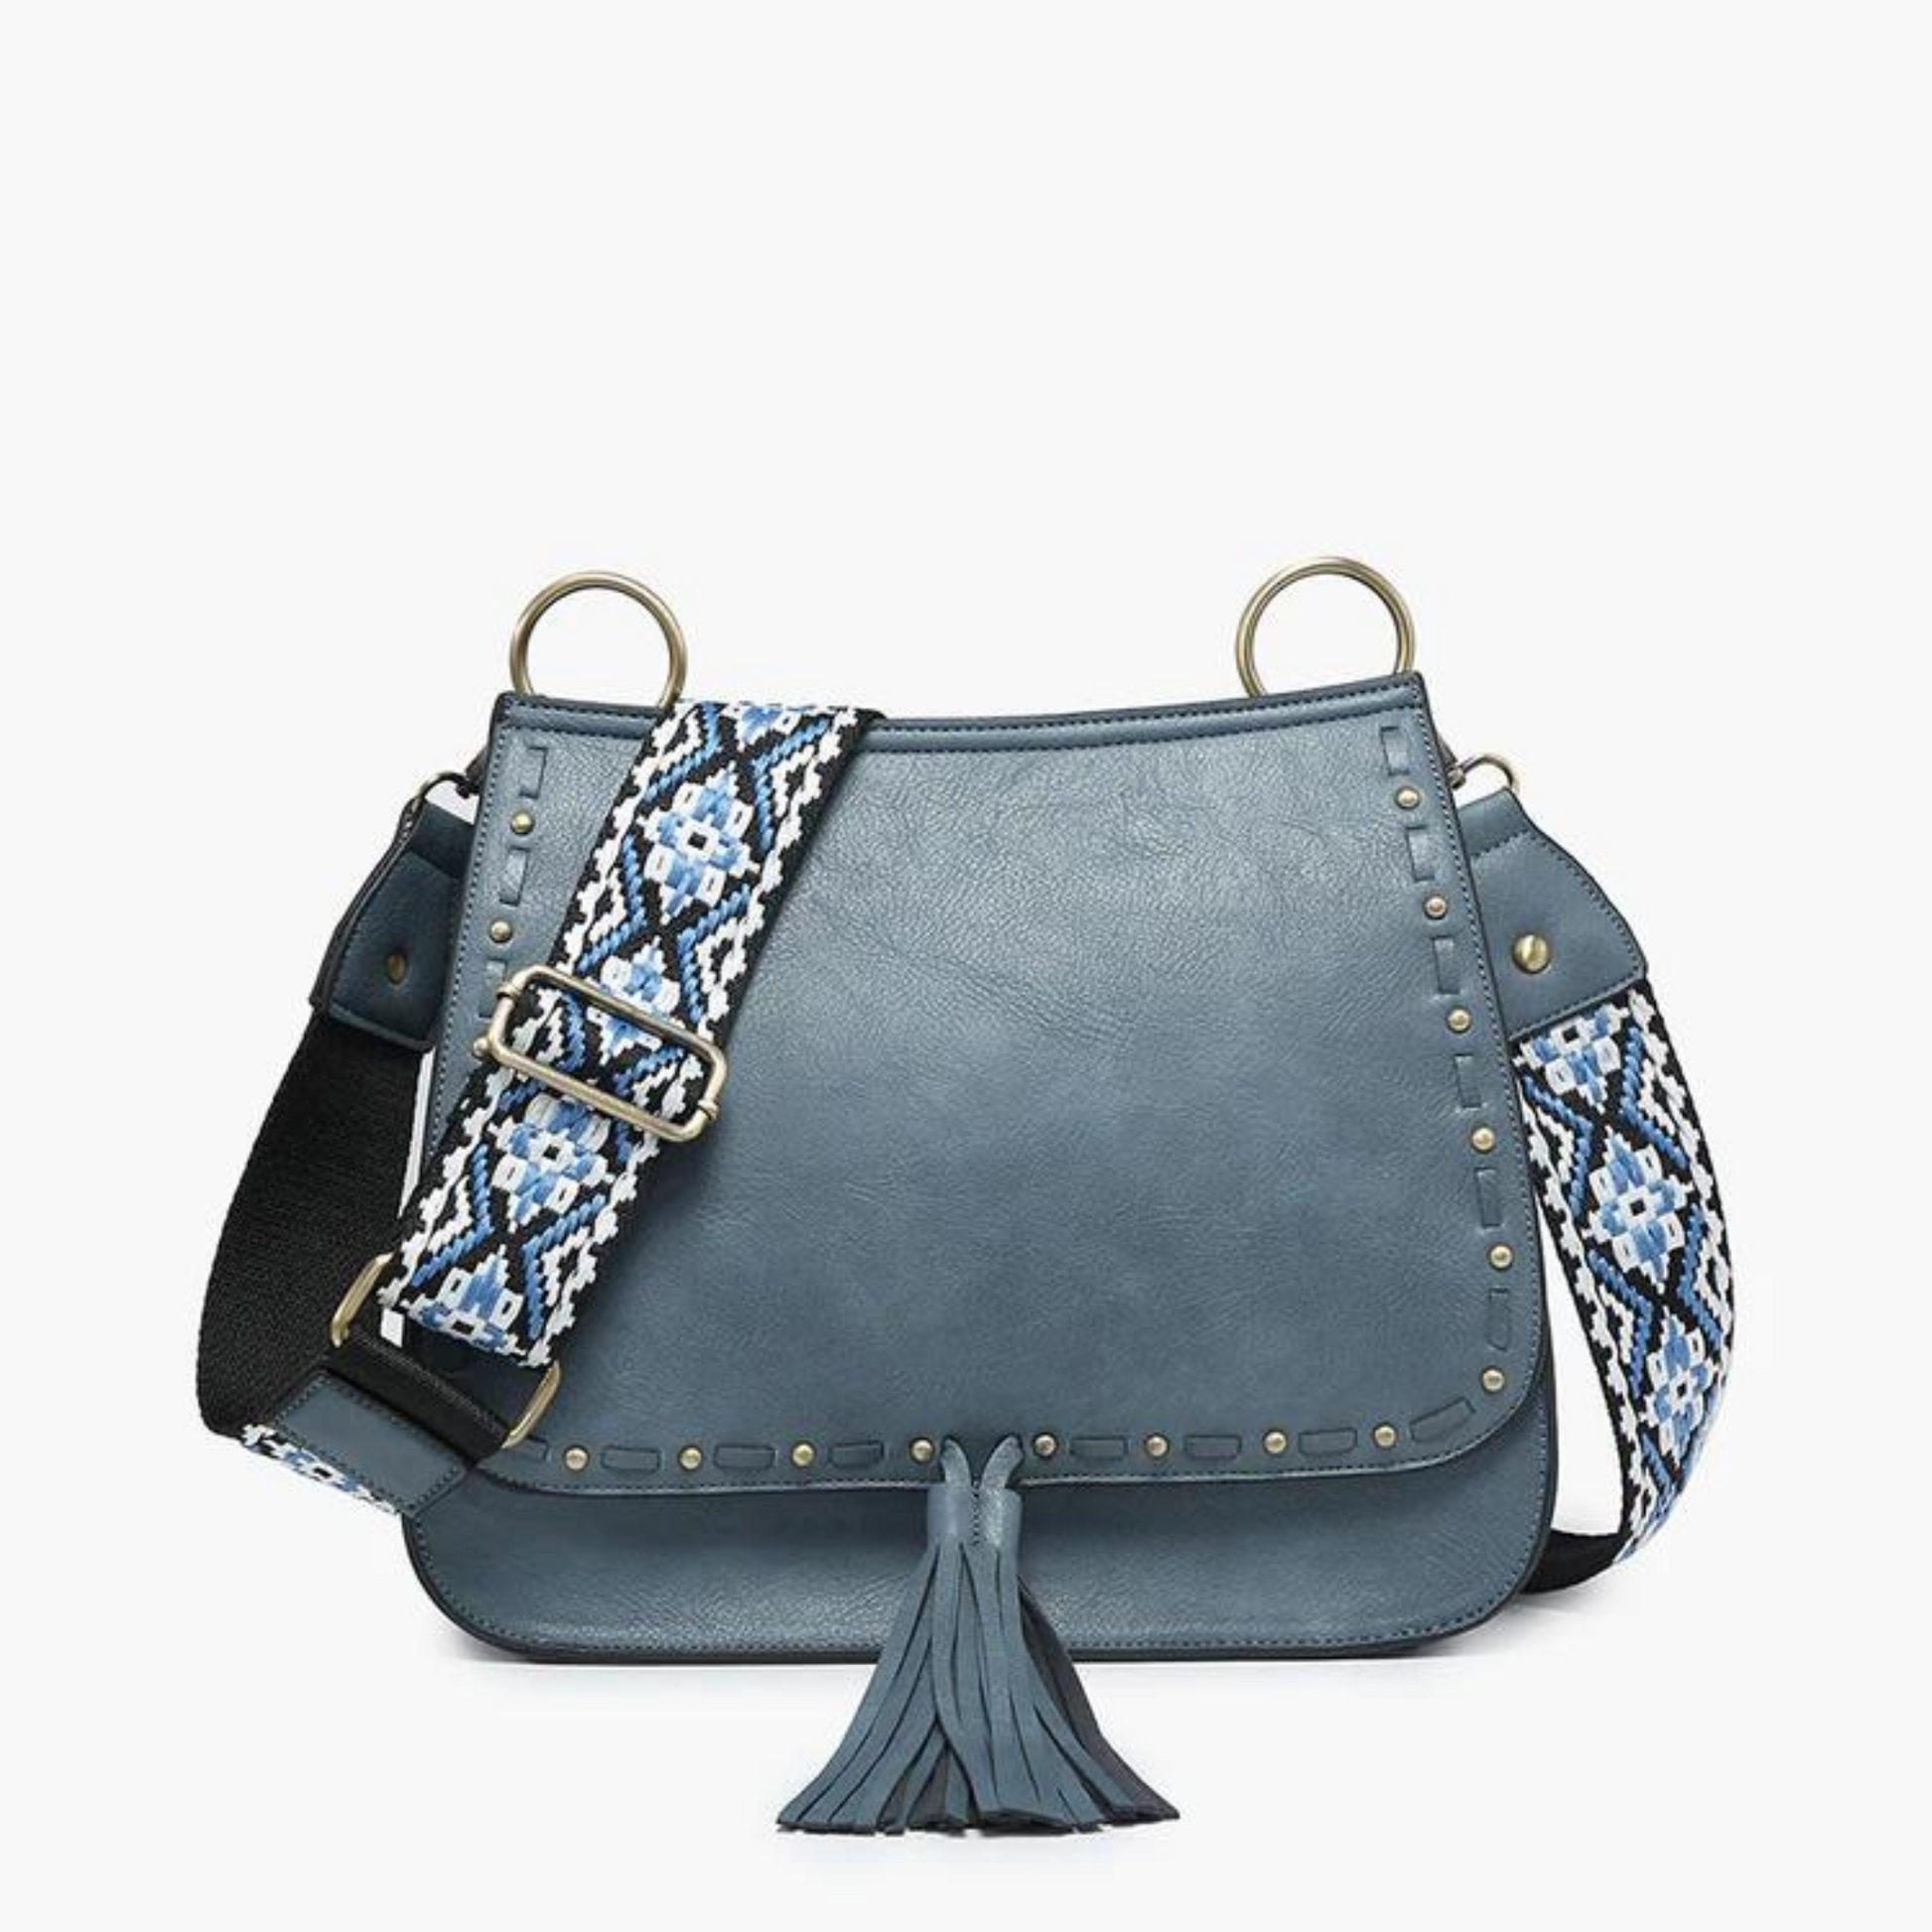 Bailey handbag in demin color